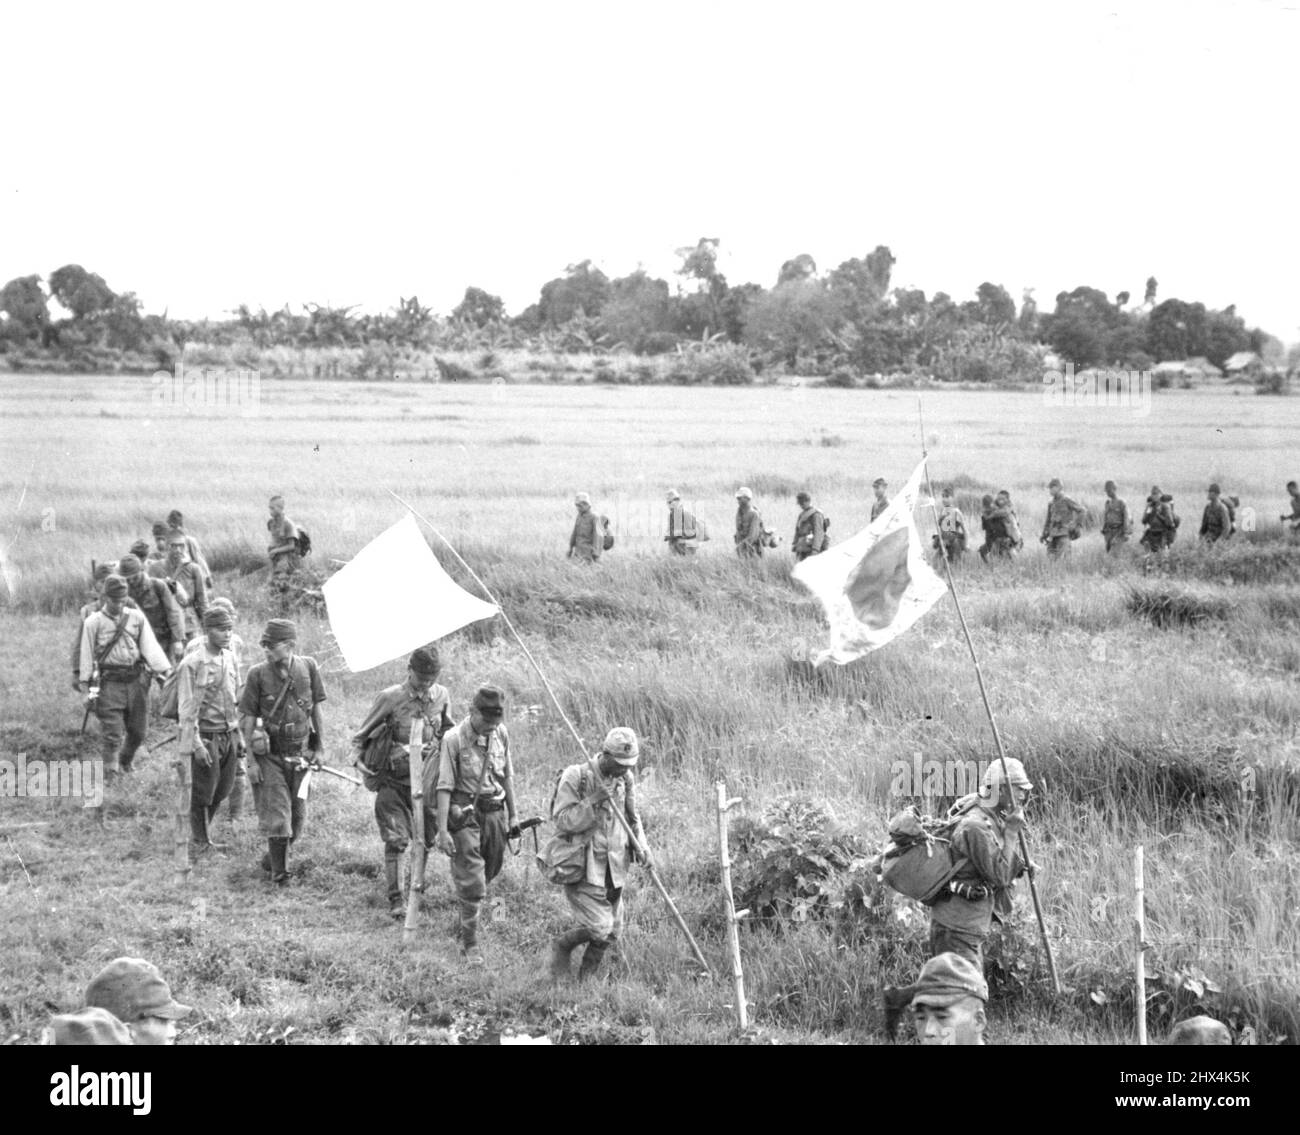 JAPS Surrender at Bataan - una colonna a serpentina di soldati giapponesi che si arrendono attraversano una risaia verde mentre si avvicinano aspettando 38th truppe Div. Cinquanta ufficiali e 400 uomini, tutti rimasti di oltre 6.000 truppe nemiche, si arresero a Orion e Bagac, Bataan. Essi sono mostrati muoversi lungo lo stesso percorso su cui gli americani hanno fatto la famigerata 'marcia della morte' nel 1942. Questa forza nemica, sotto il col. Nagayoshi è stata completamente sconfitta in battaglia dalle truppe del veterano 38th Div. Nella loro riconquista degli storici penisole Bataan. Aprile 9, 1945. (Foto di U.S. Army Photo). Foto Stock